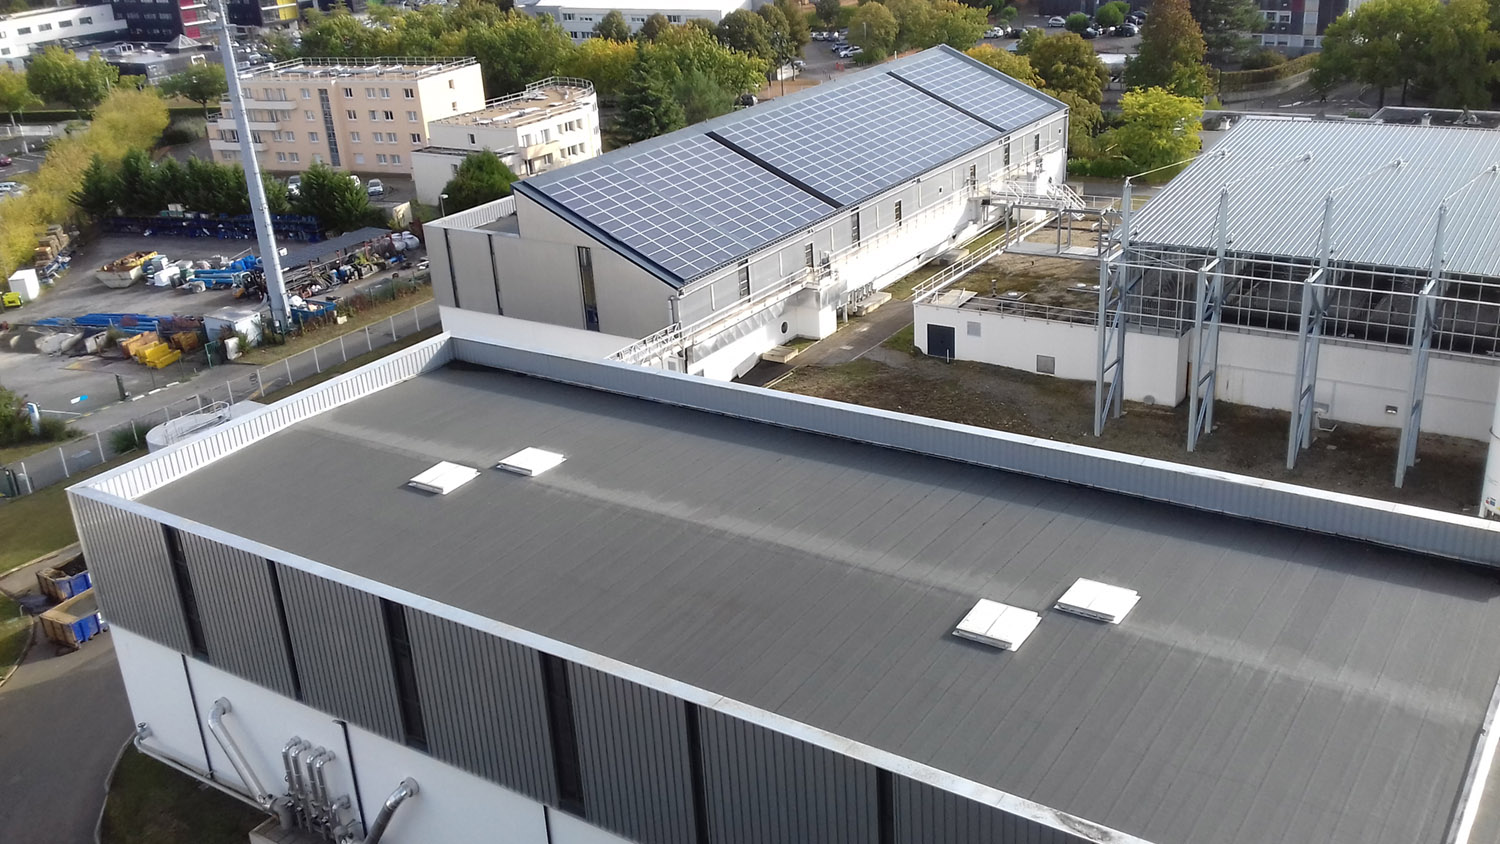 Des panneaux photovoltaïques pour produire de l'énergie renouvelable